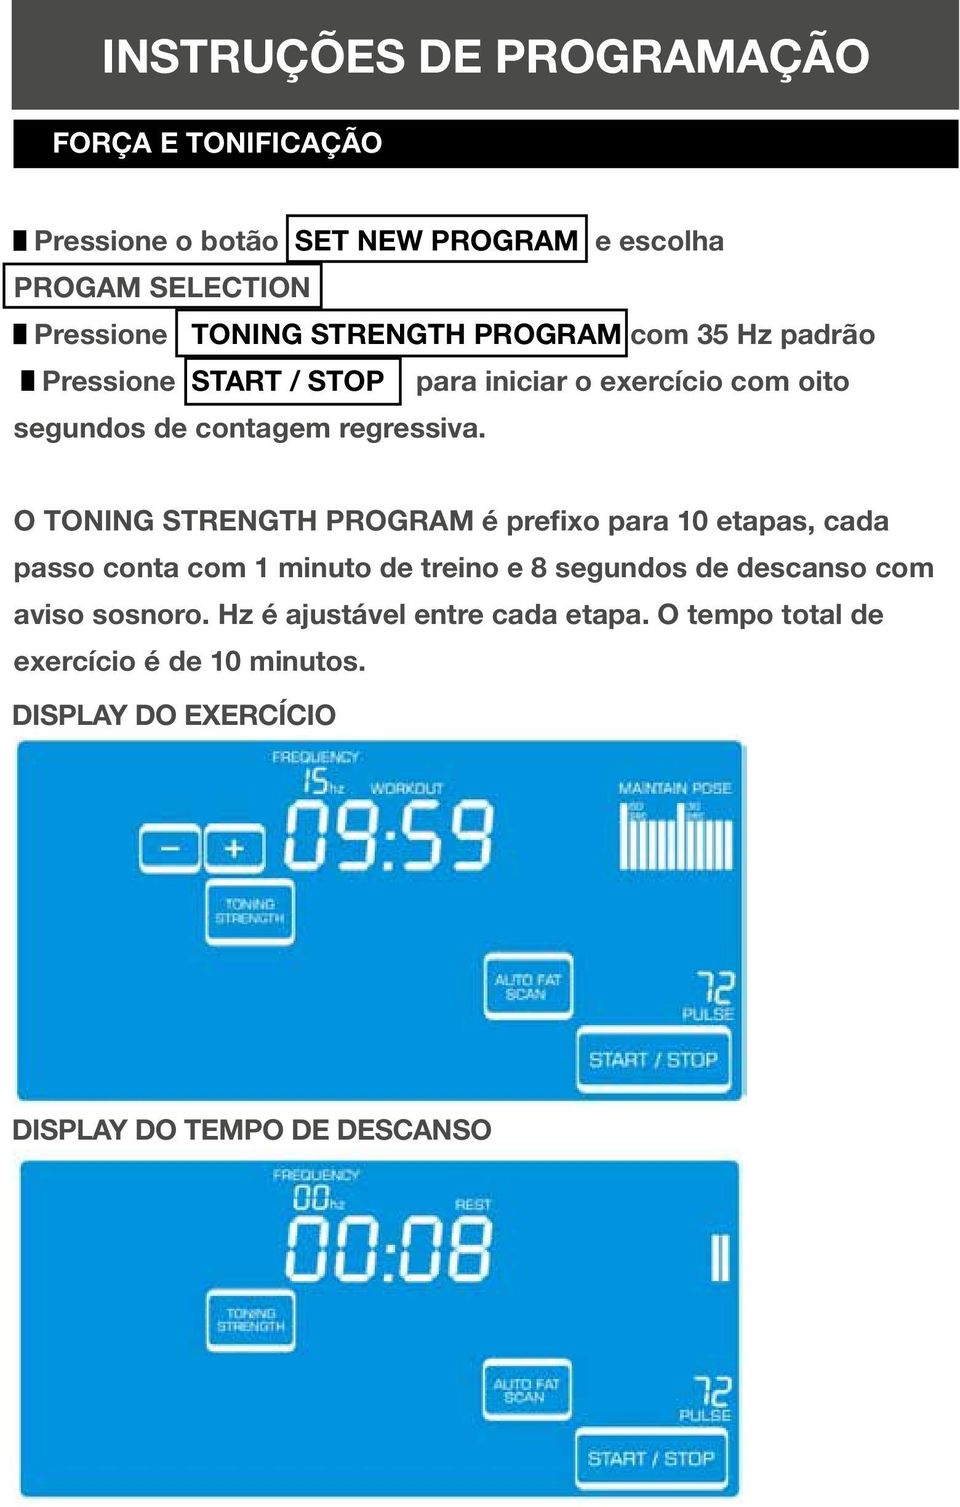 O TONING STRENGTH PROGRAM é prefixo para 10 etapas, cada passo conta com 1 minuto de treino e 8 segundos de descanso com aviso